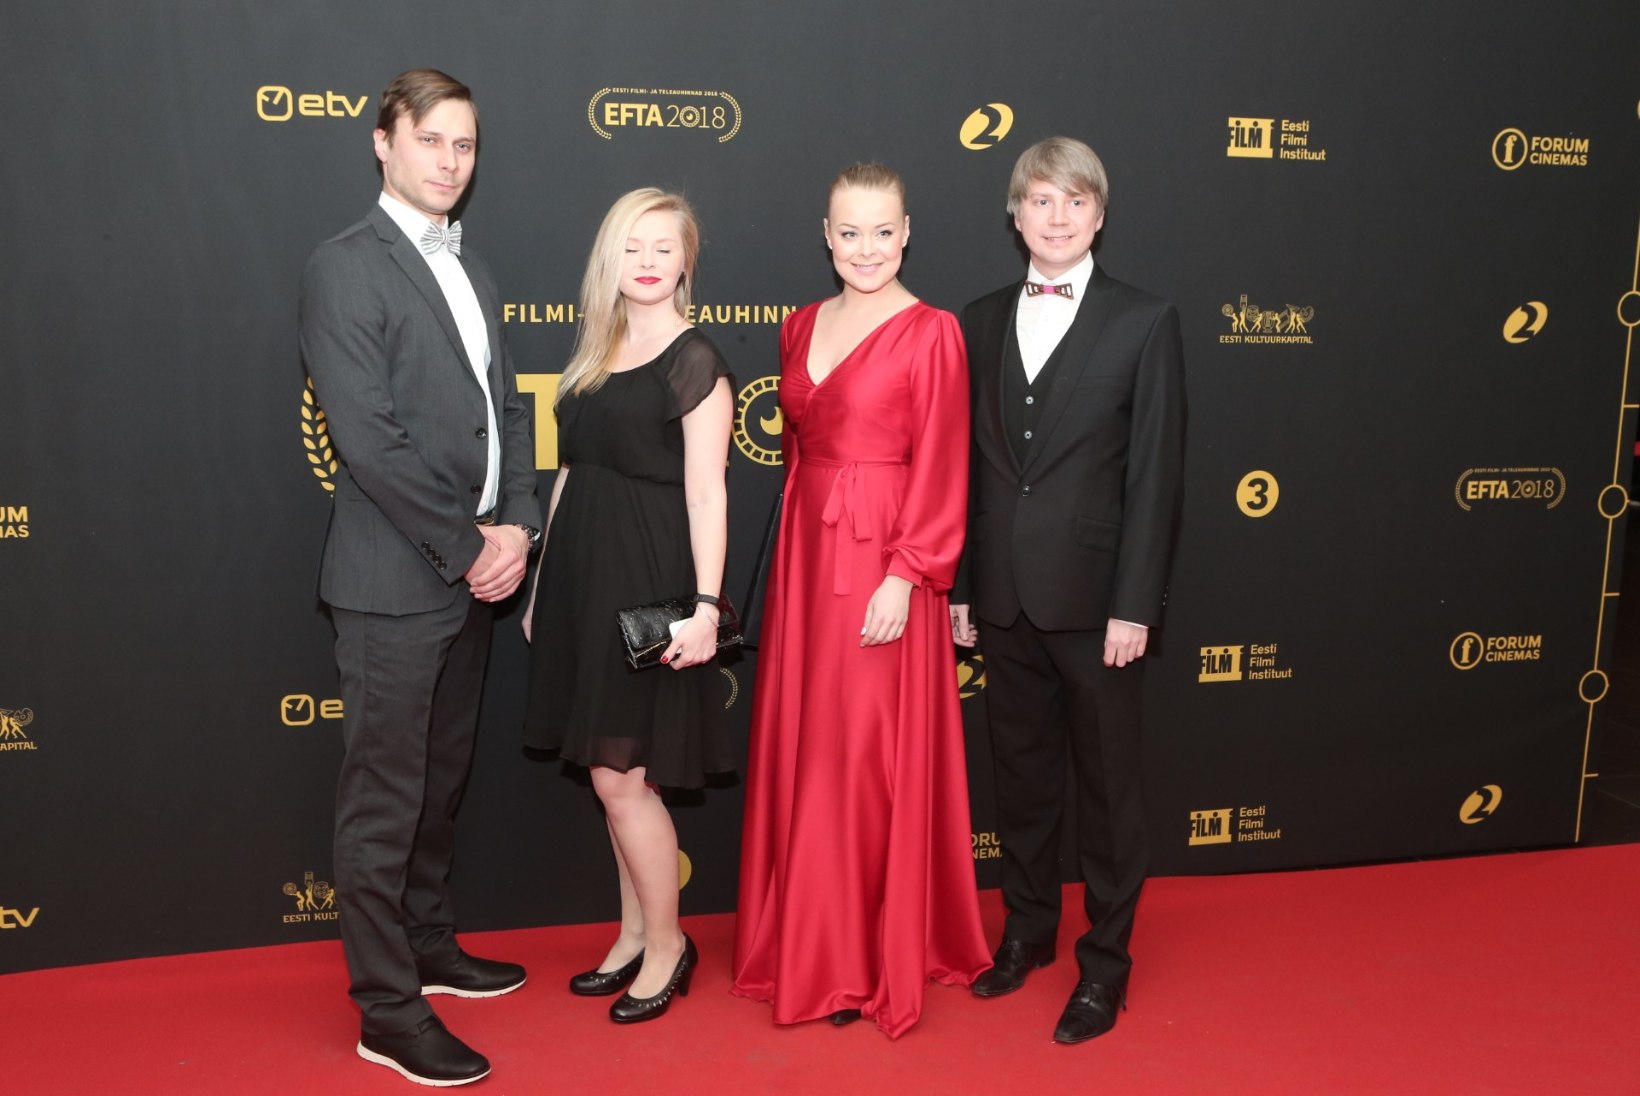 SUUR GALERII | Eesti tele- ja filmimaailma koorekiht poseeris EFTA punasel vaibal